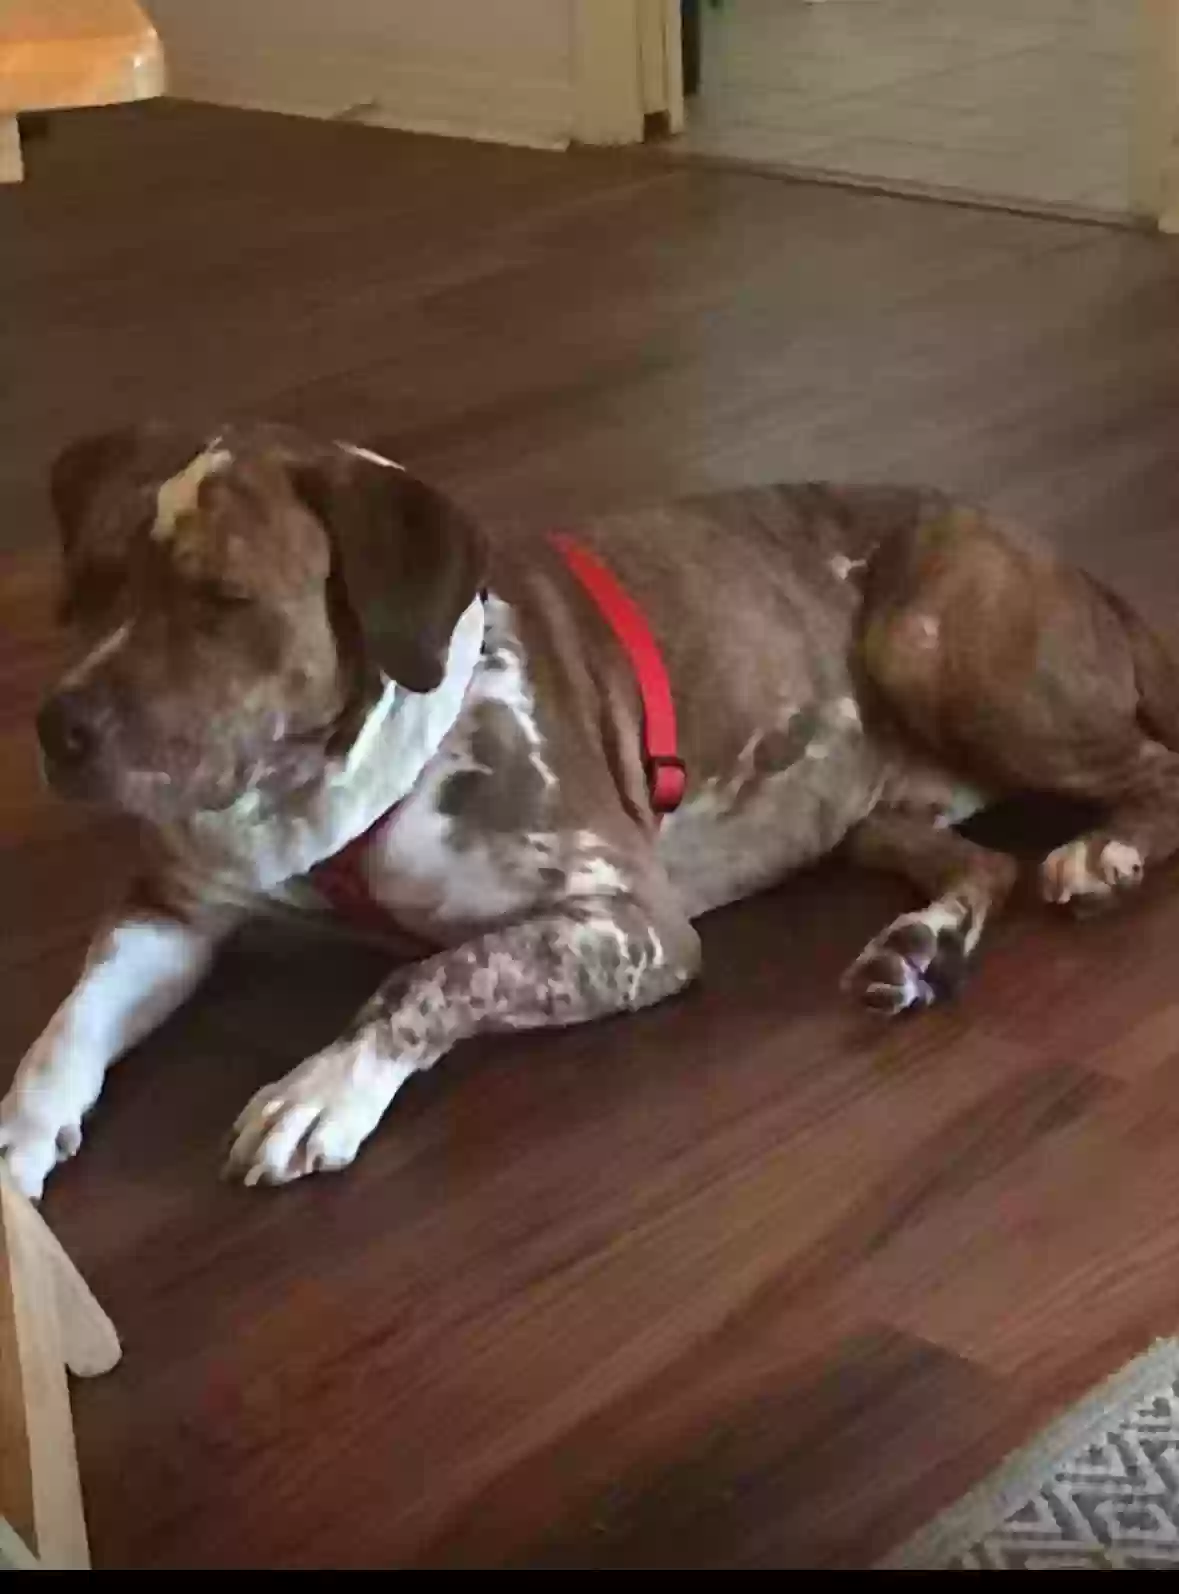 adoptable Dog in Tampa,FL named Rosco